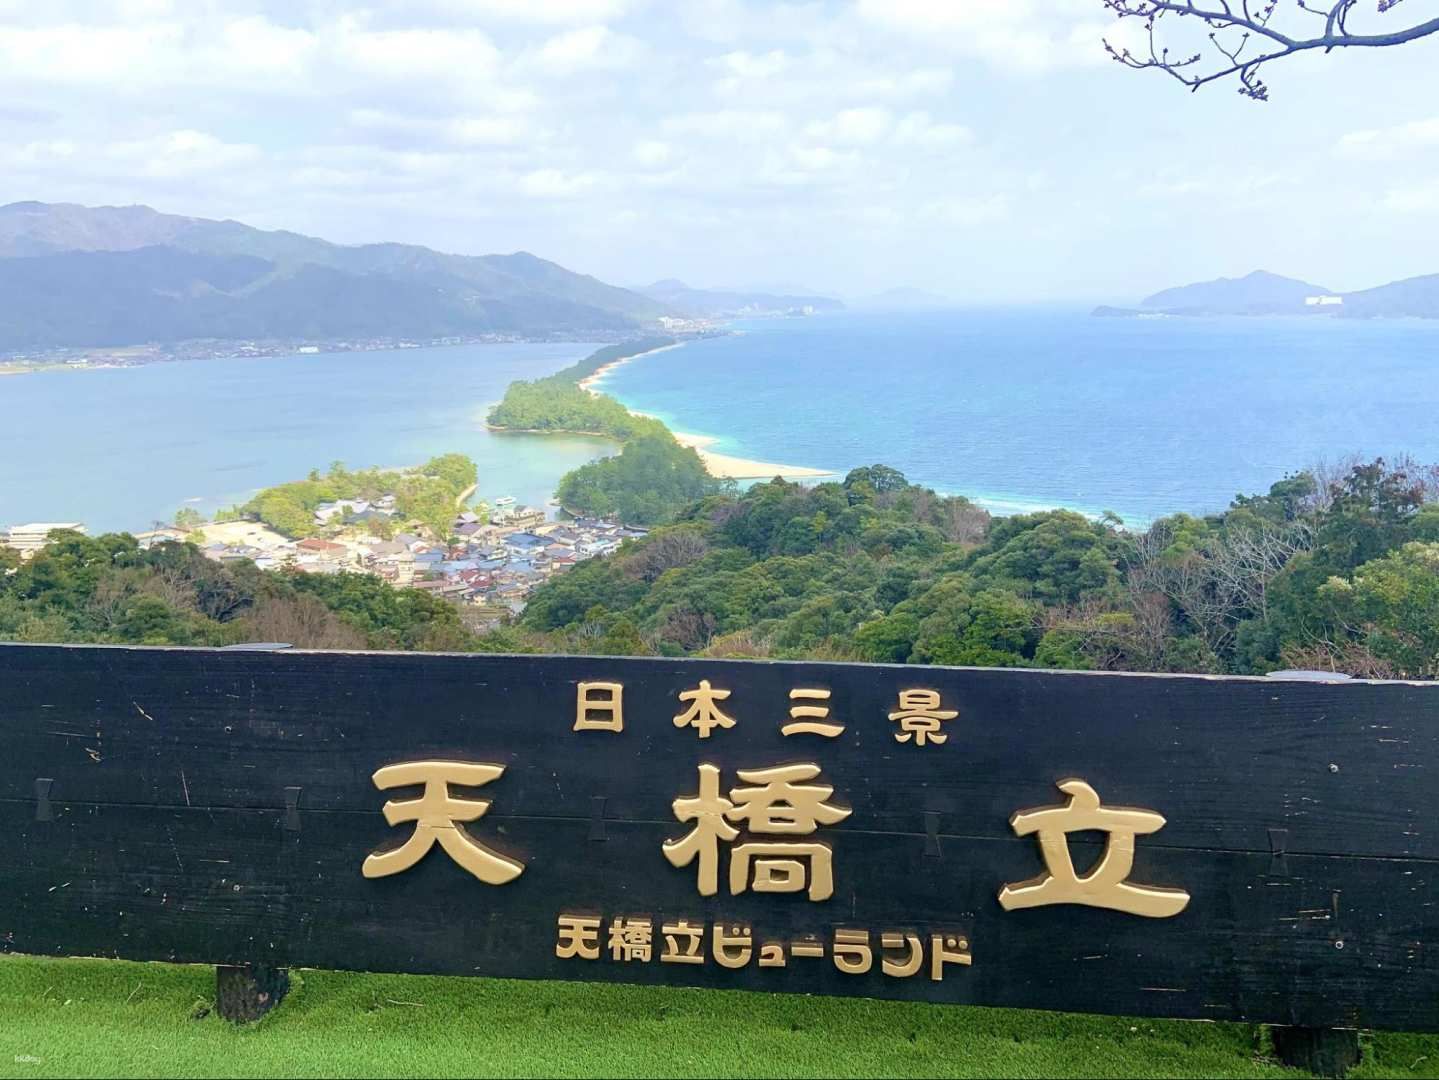 Amanohashidate Viewland